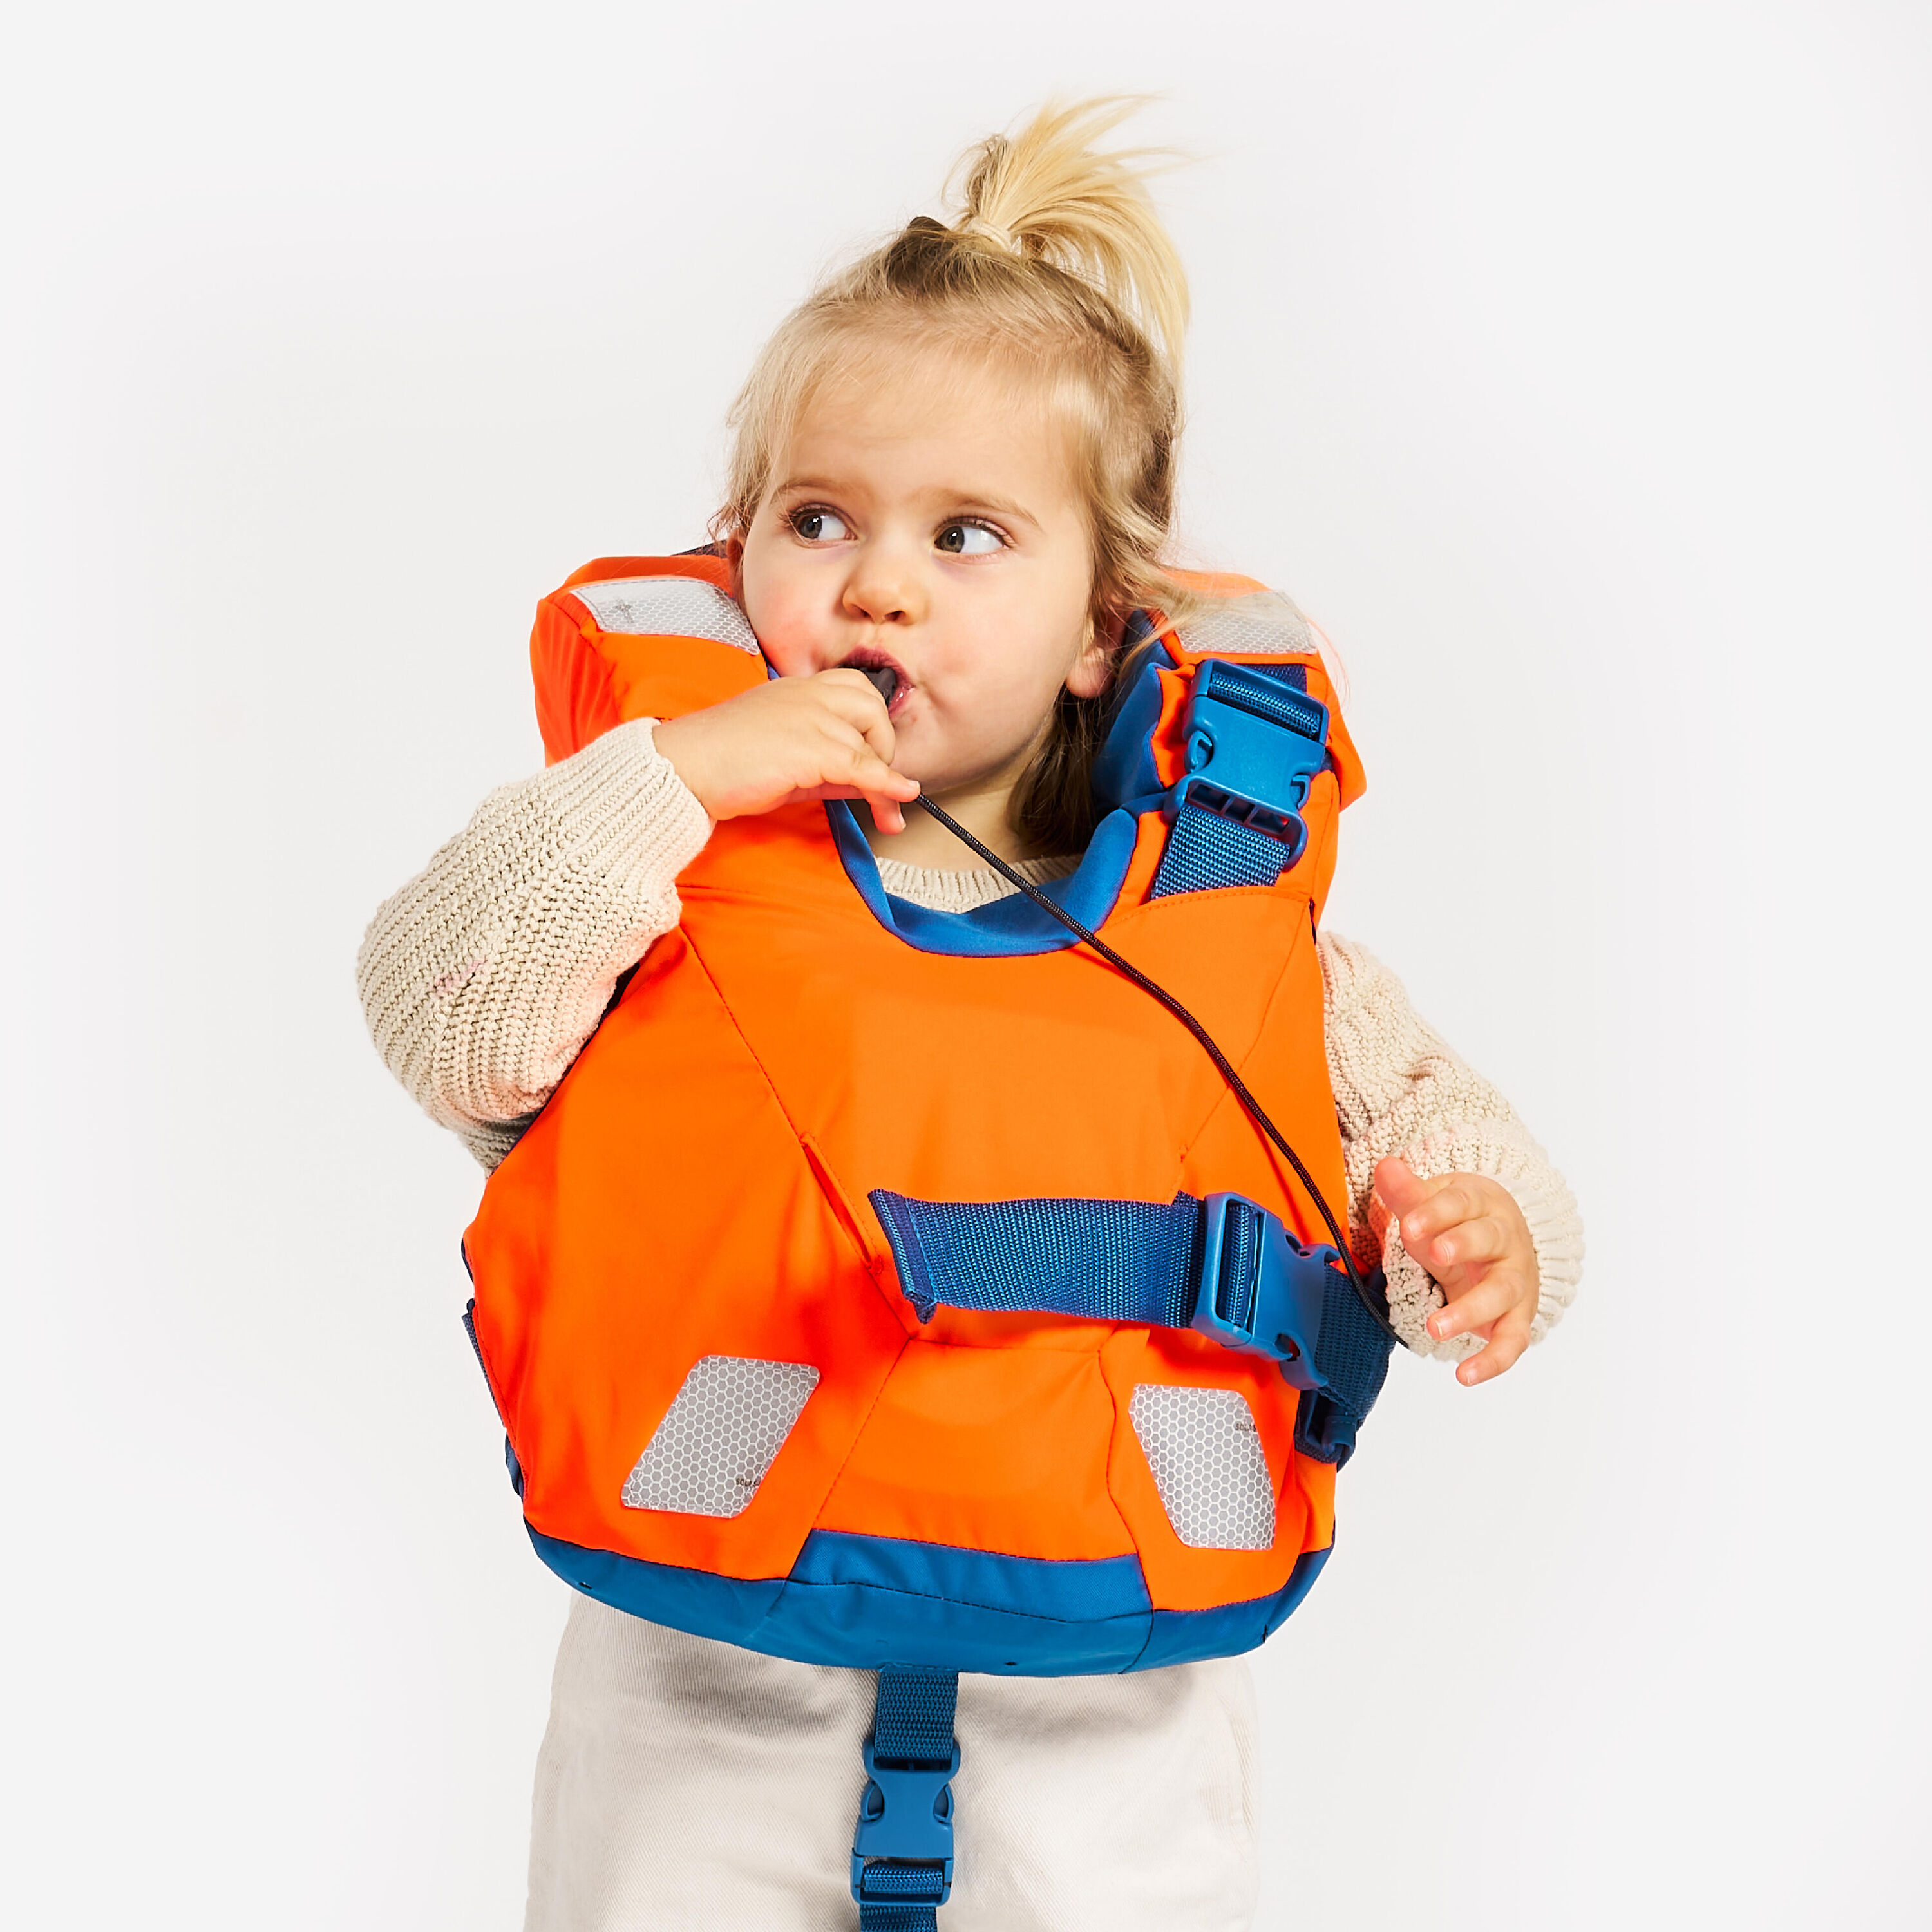 TRIBORD LJ100N easy baby life jacket for babies and infants 10-15 kg orange blue